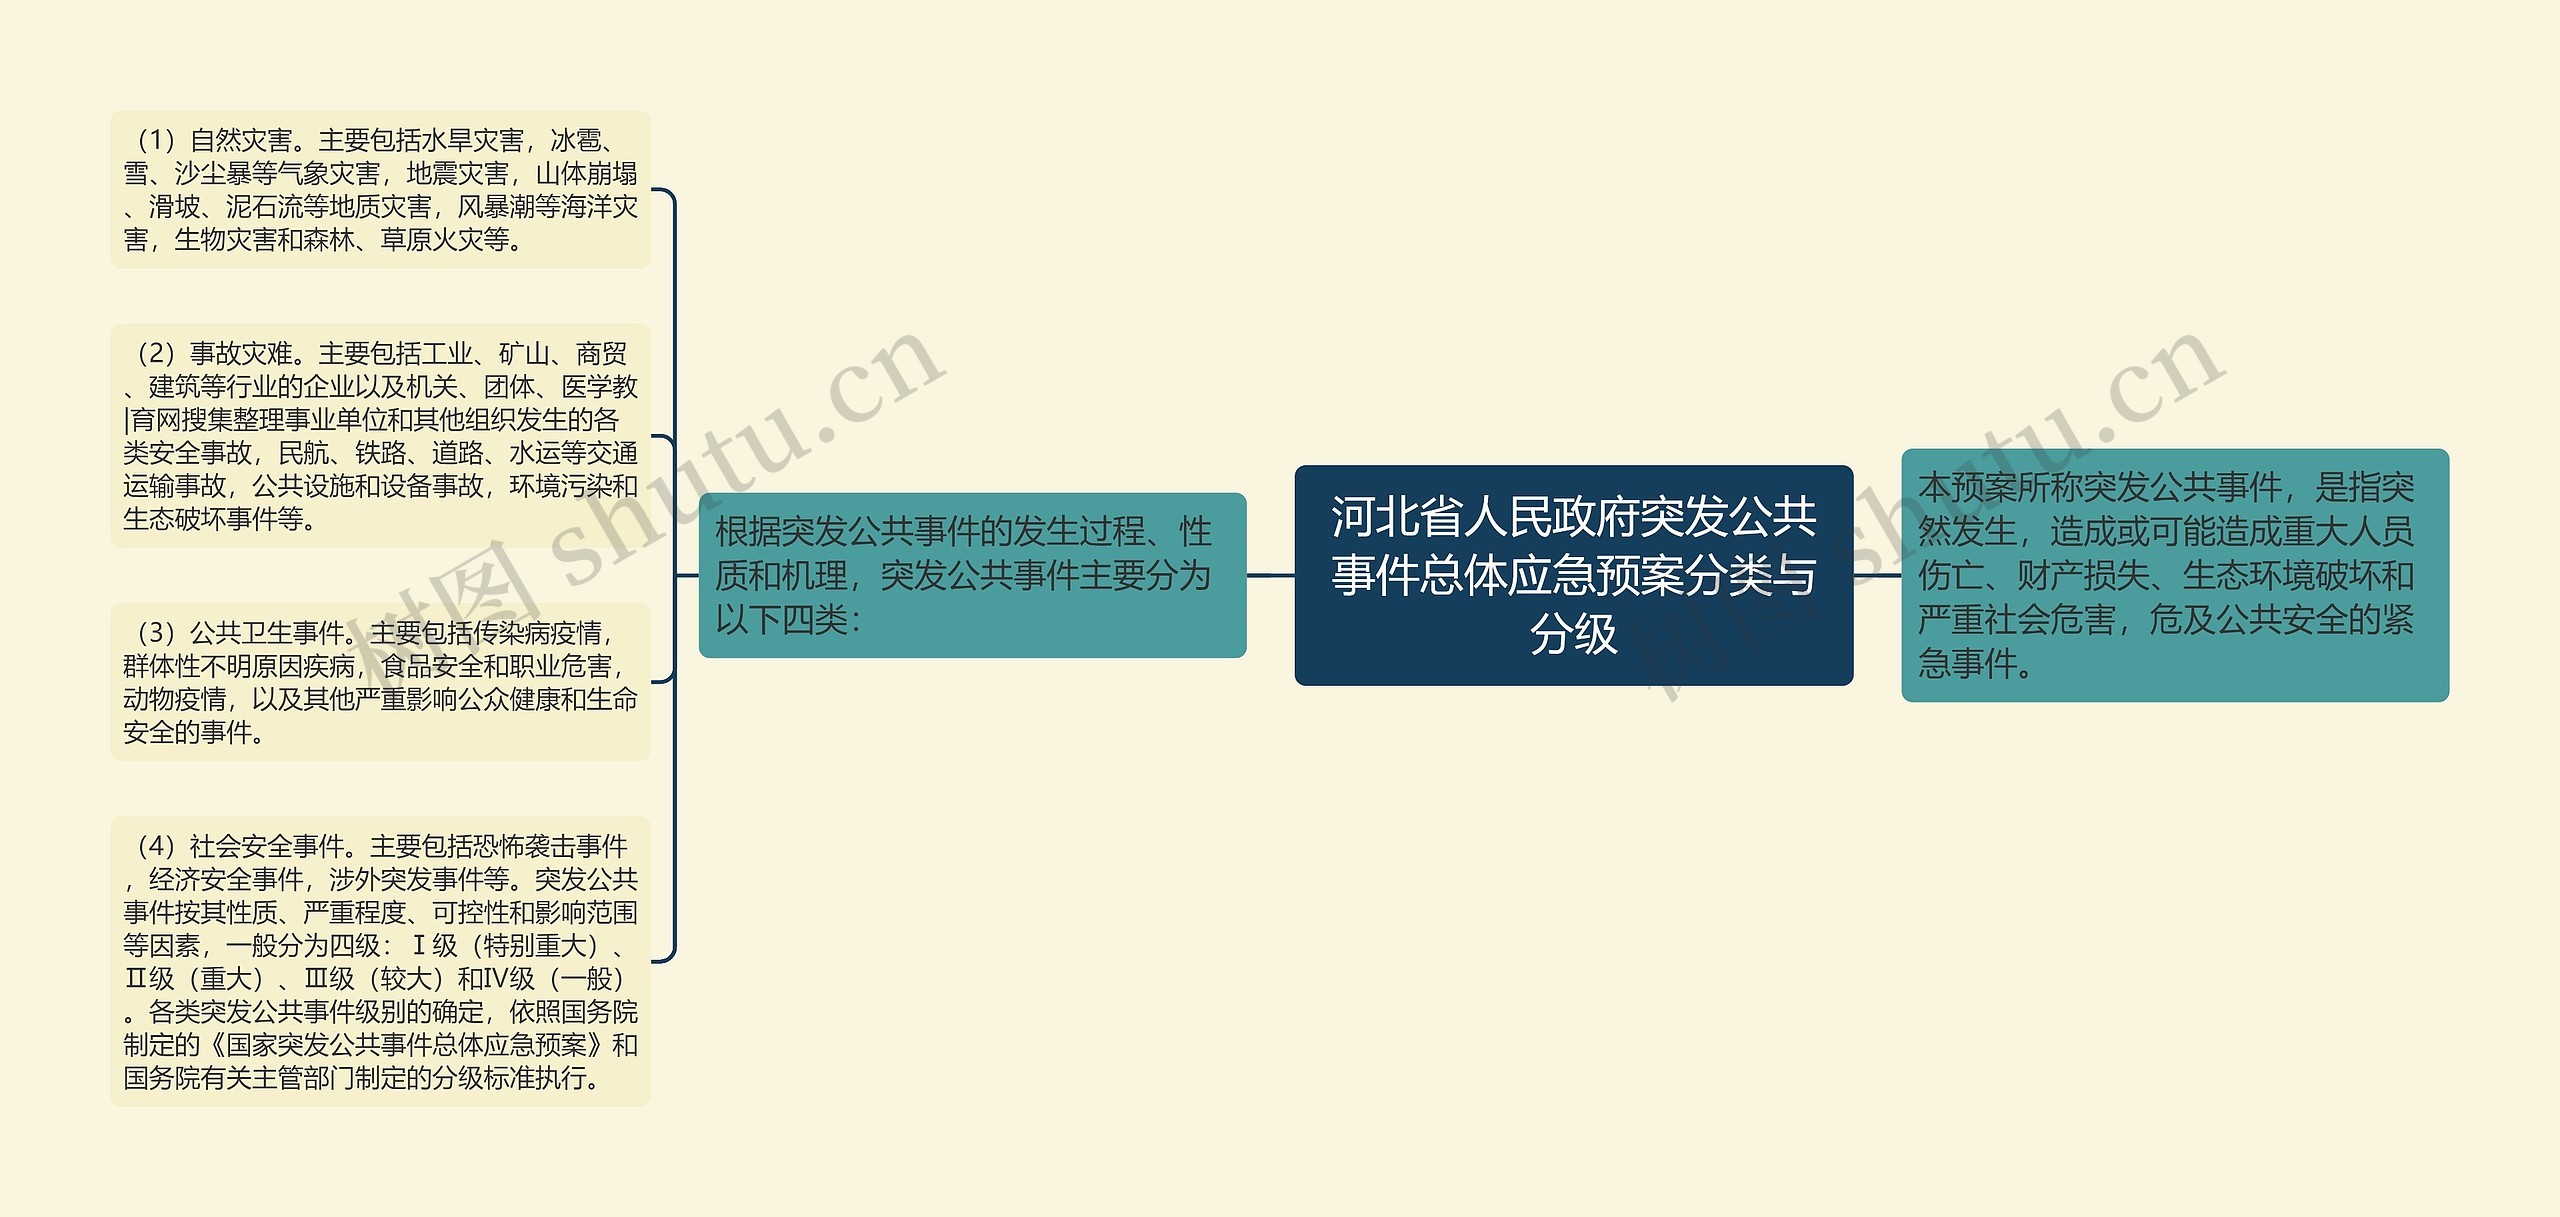 河北省人民政府突发公共事件总体应急预案分类与分级思维导图